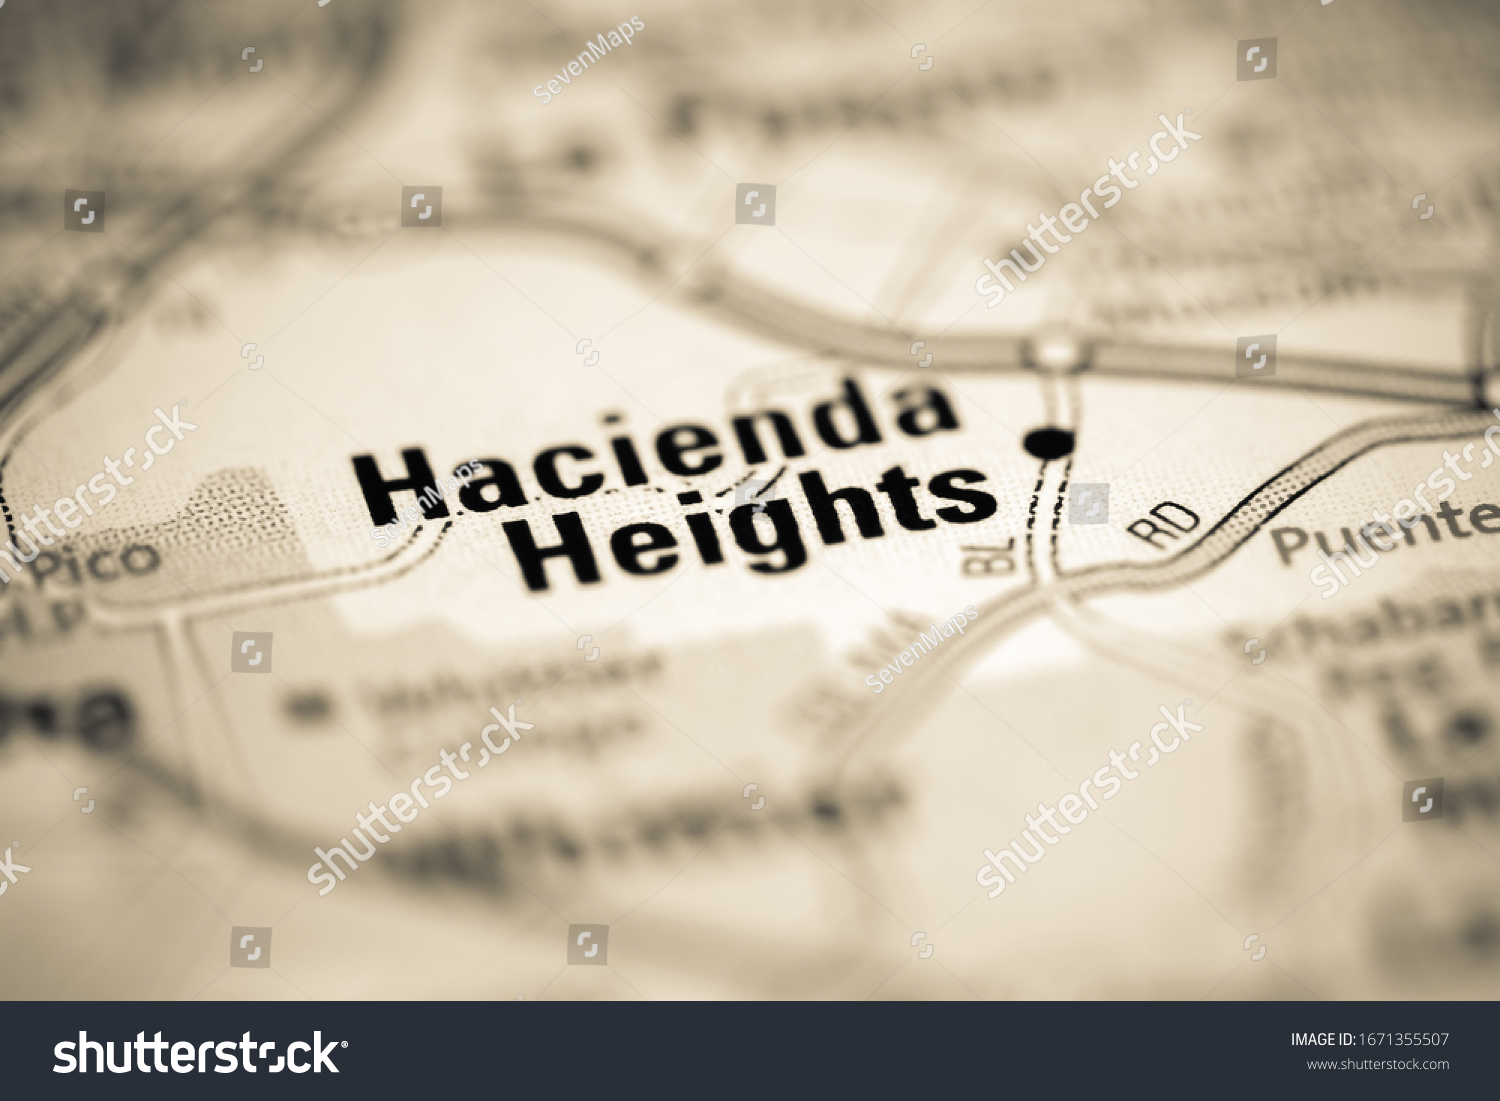 Hacienda Heights Map Images Stock Photos Vectors Shutterstock